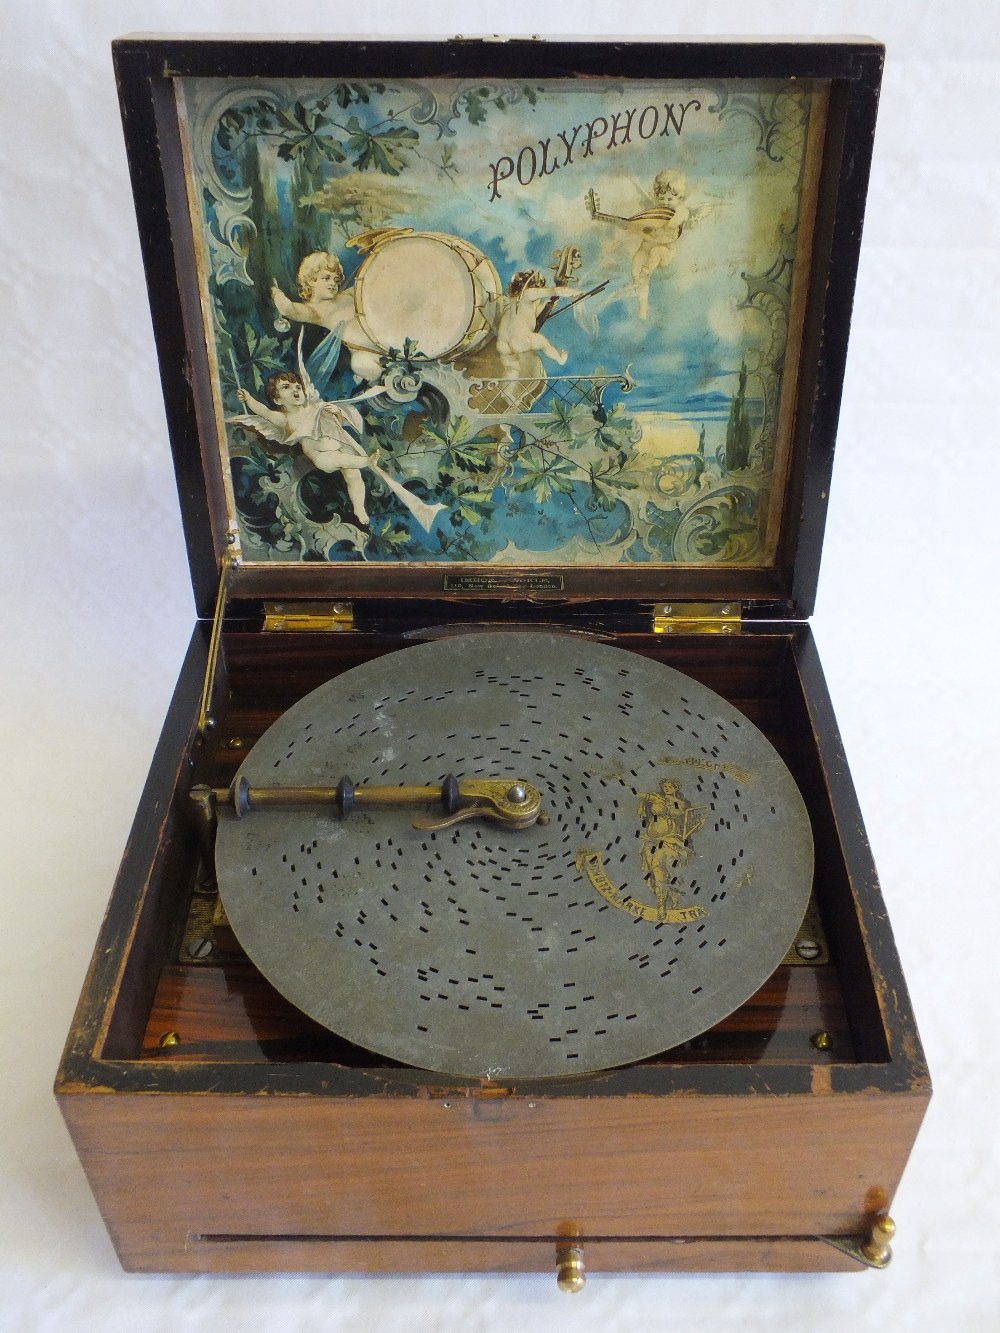 A Walnut cased Polyphon with twenty five discs